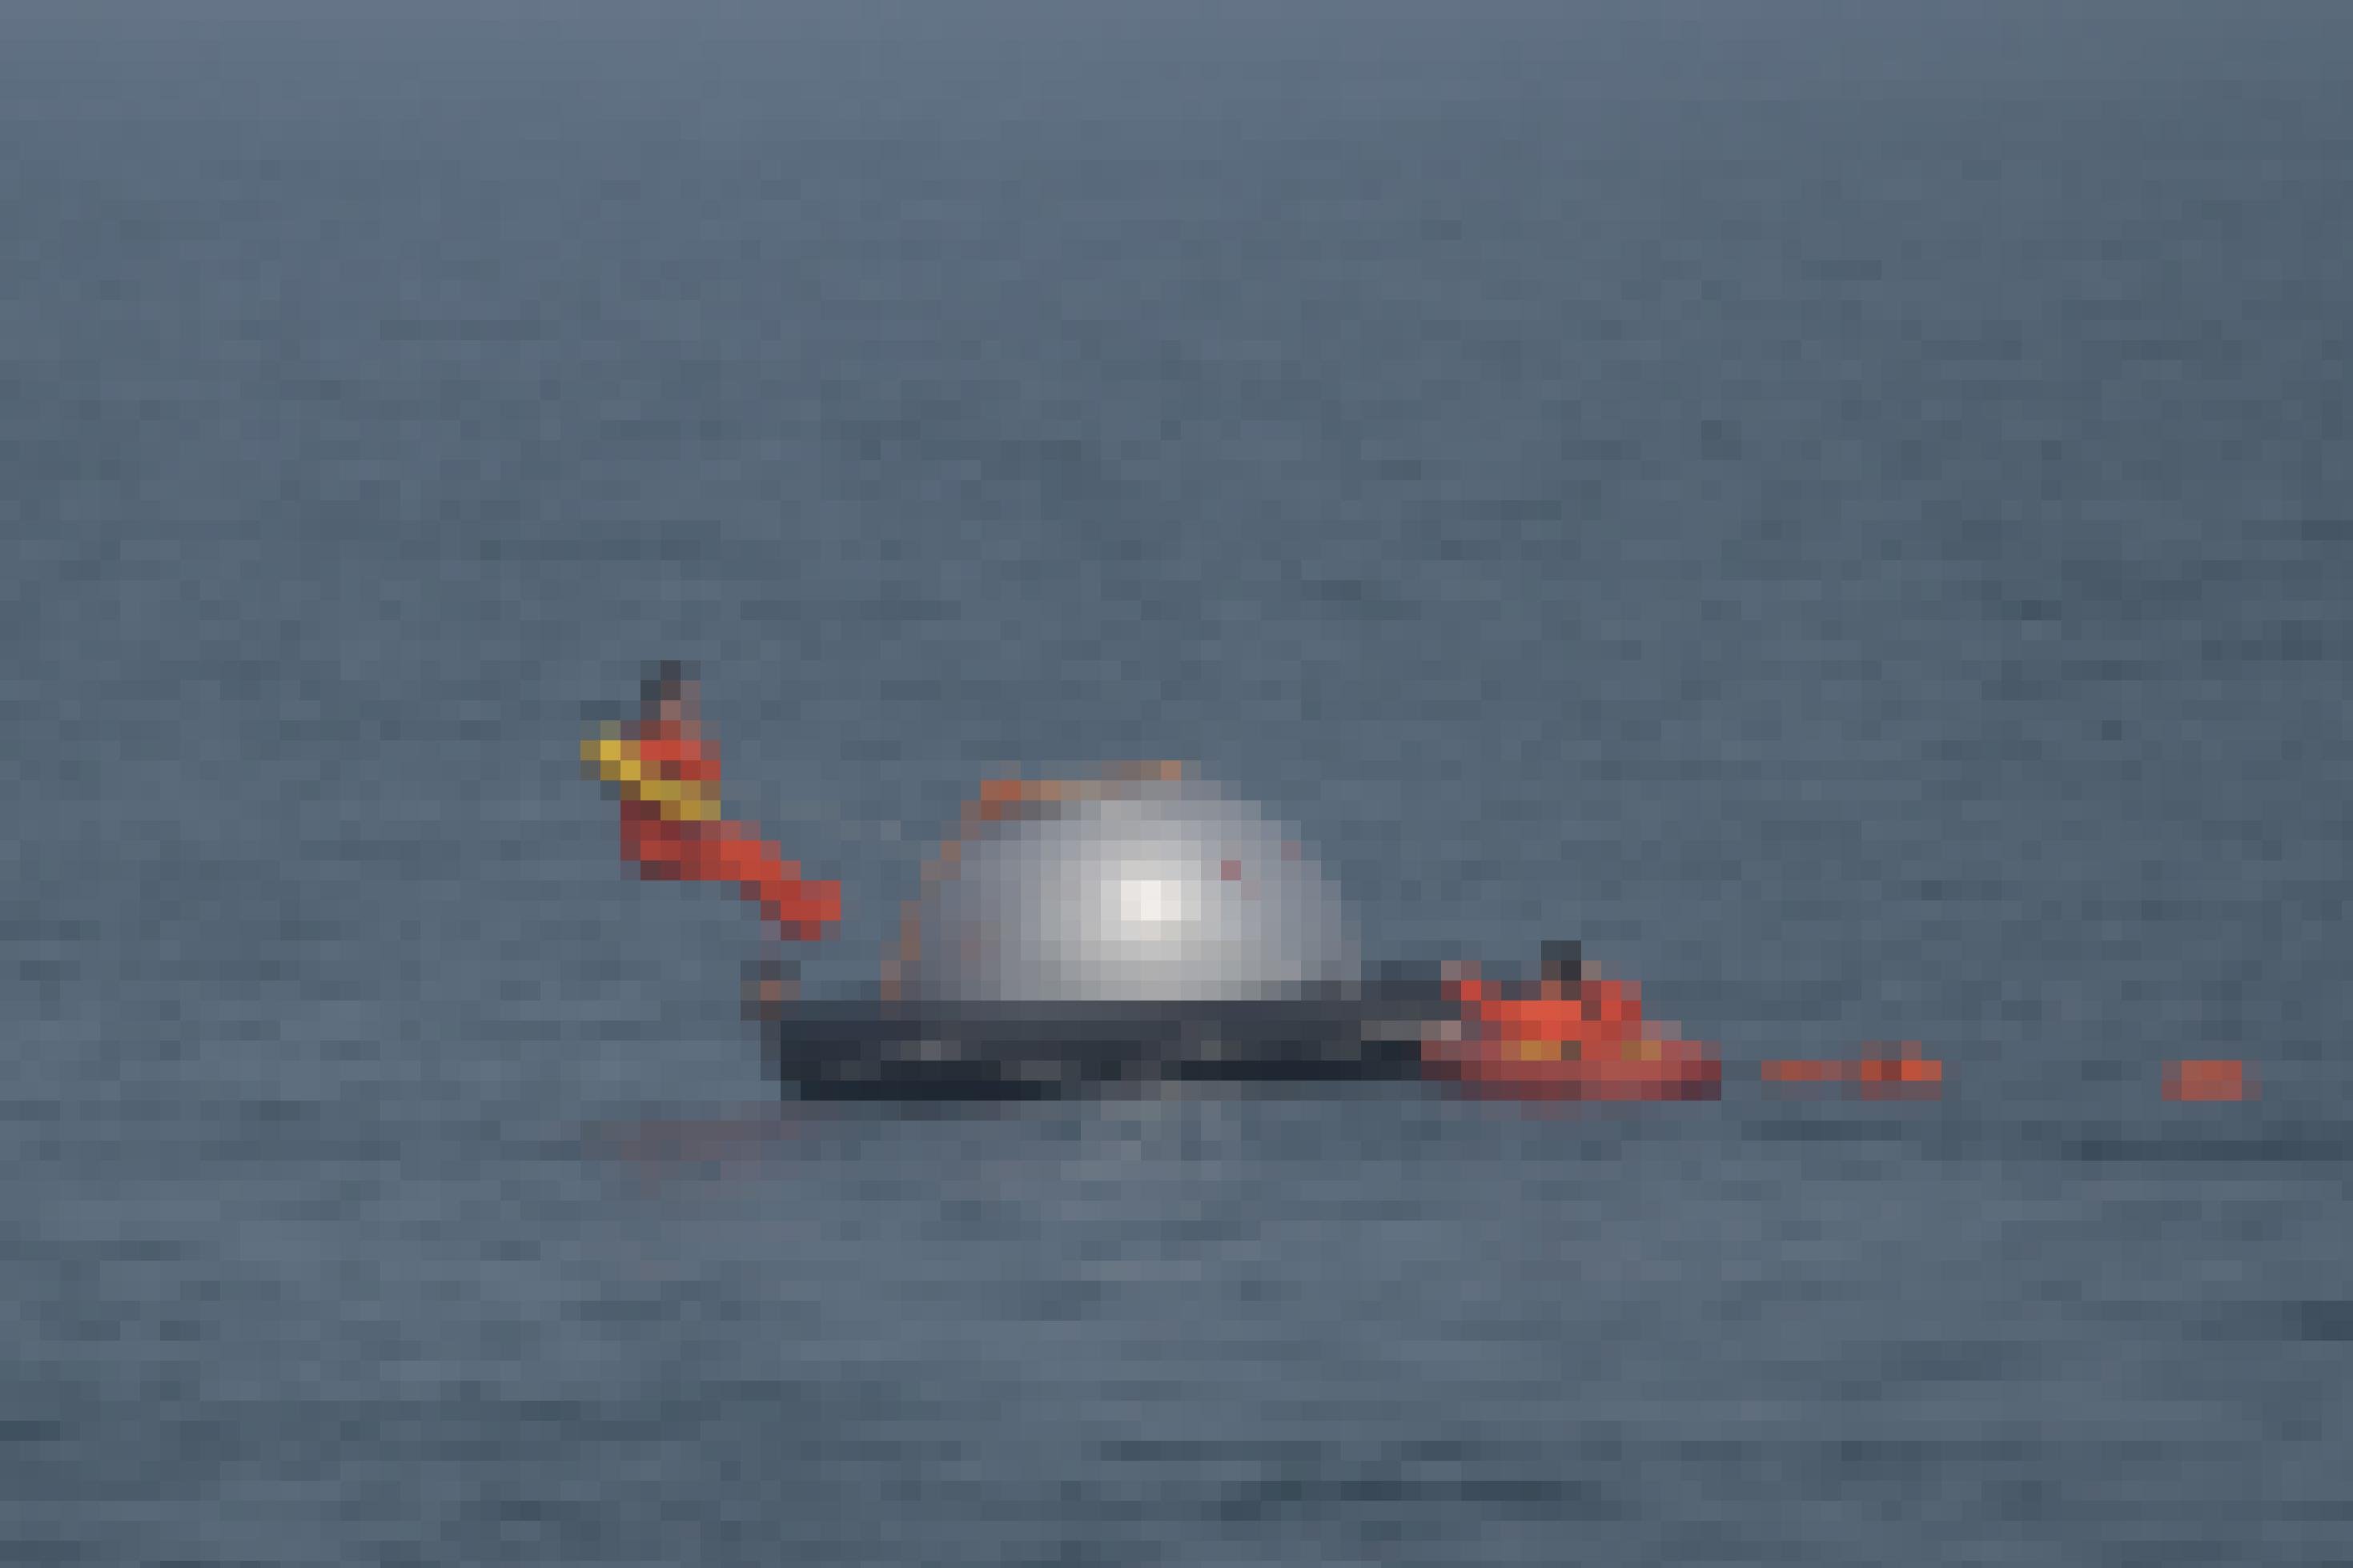 Mitten im Meer schwimmt eine Shenzhou-Kapsel: In der Ferne springt Matthias Maurer rückwärts ins Wasser